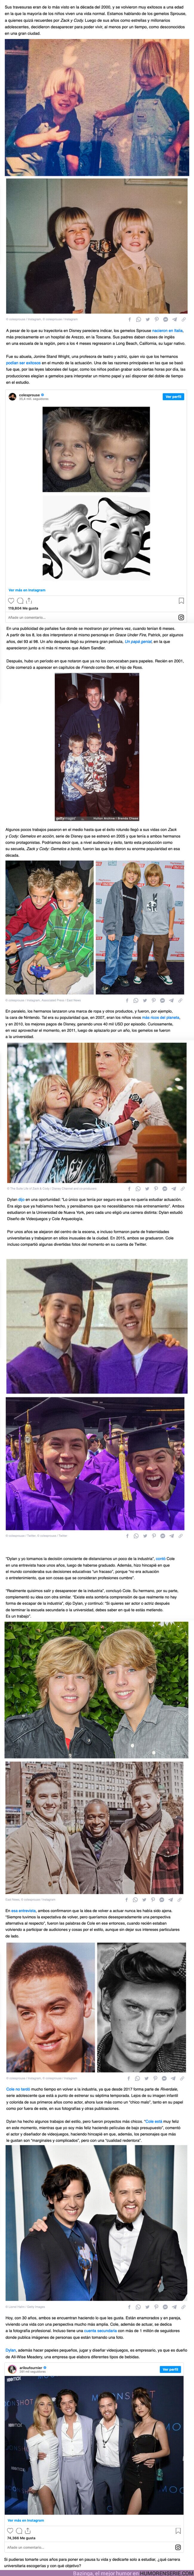 114344 - GALERÍA: Dylan y Cole Sprouse, los hermanos Disney que eligieron vivir como desconocidos